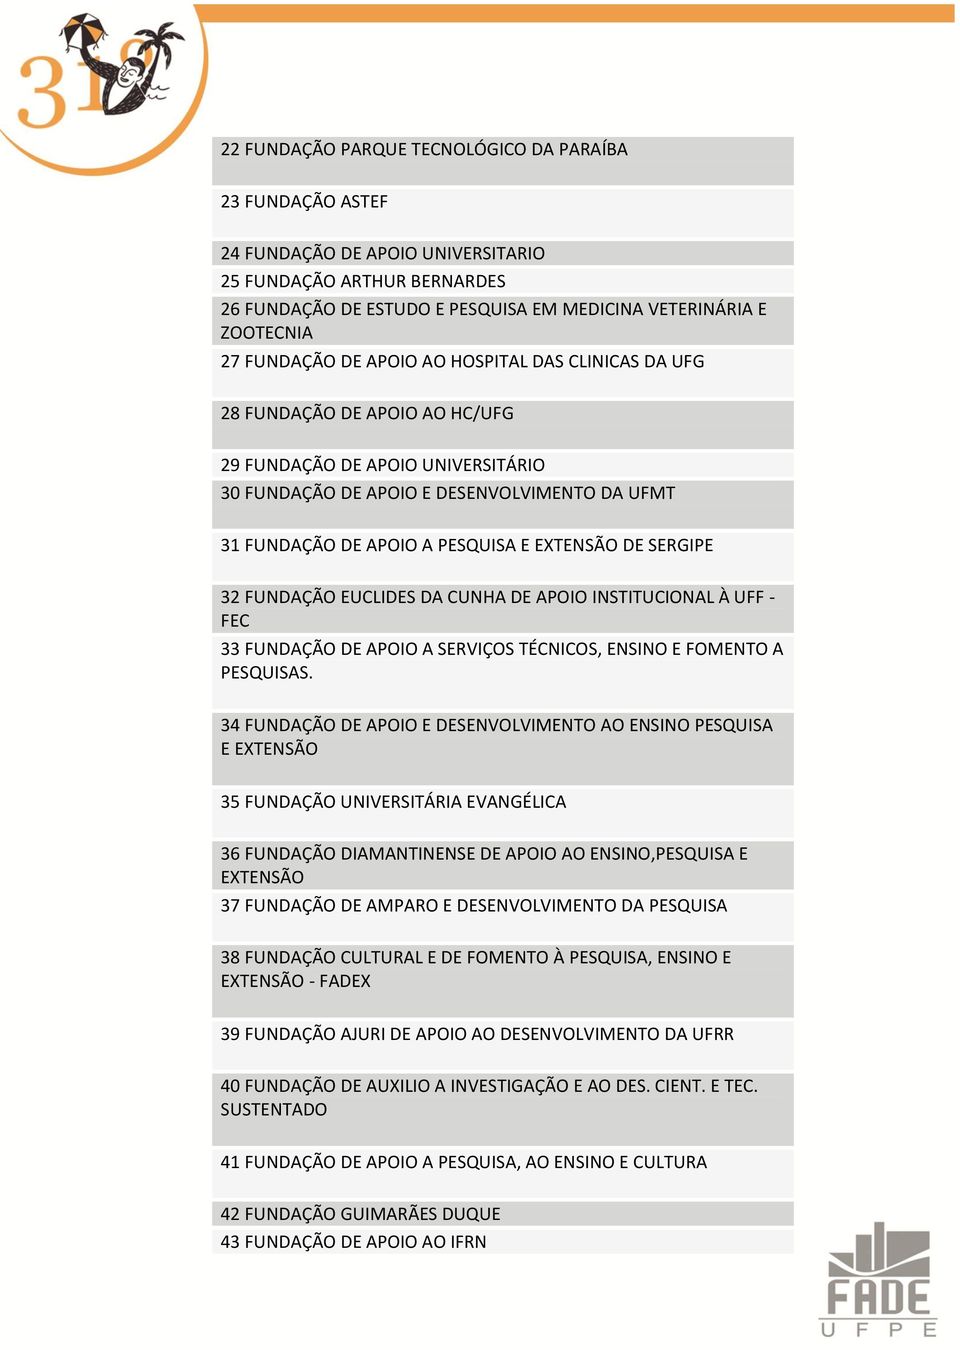 EXTENSÃO DE SERGIPE 32 FUNDAÇÃO EUCLIDES DA CUNHA DE APOIO INSTITUCIONAL À UFF - FEC 33 FUNDAÇÃO DE APOIO A SERVIÇOS TÉCNICOS, ENSINO E FOMENTO A PESQUISAS.